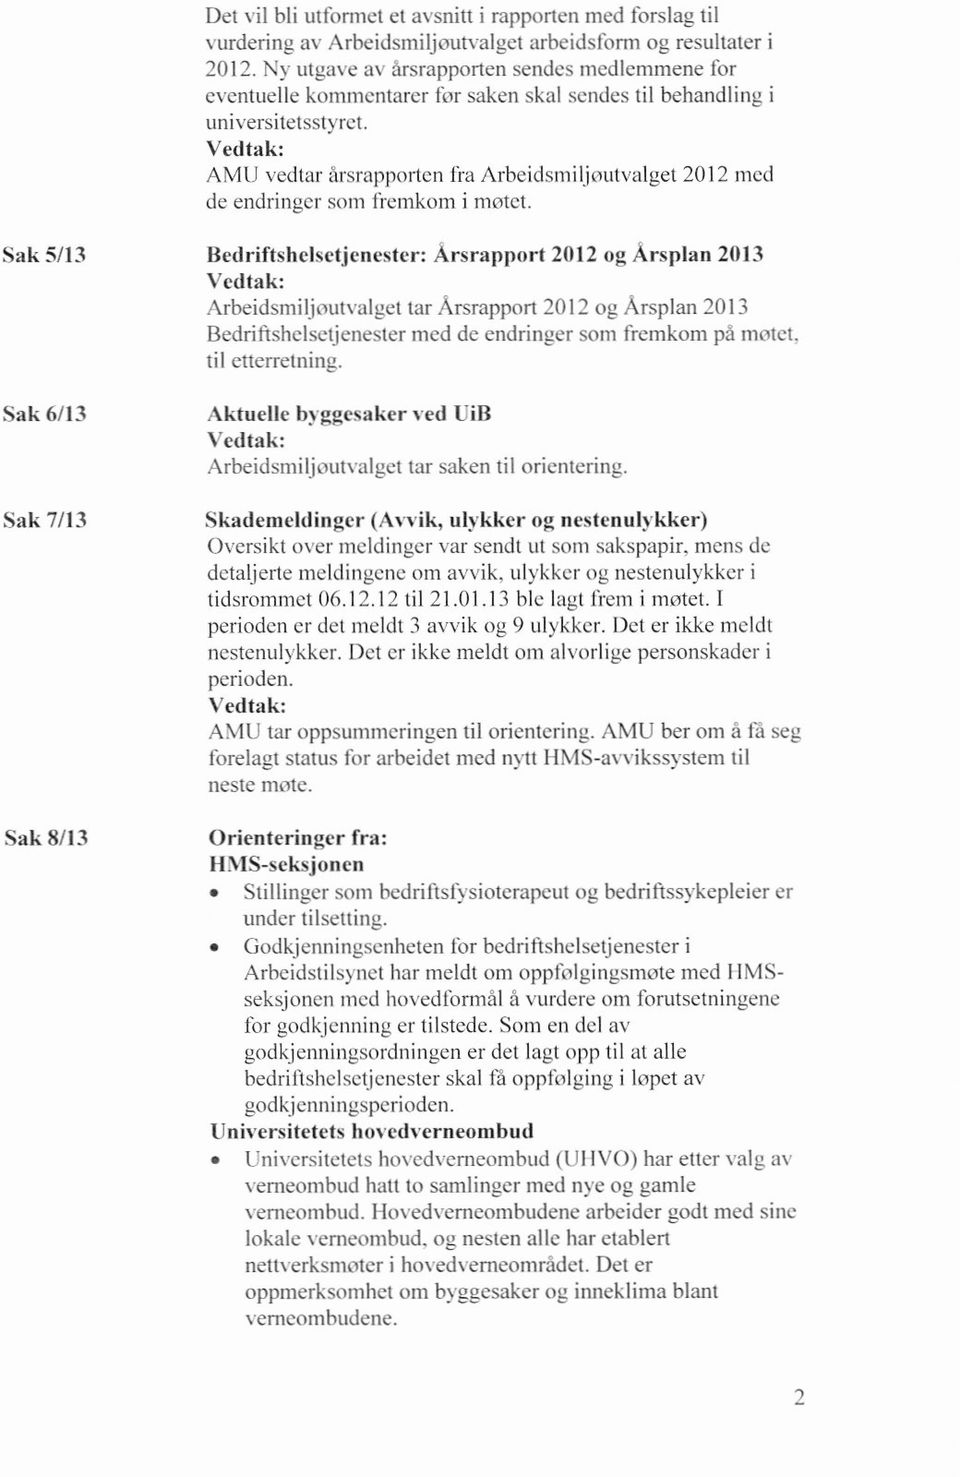 Vedtak: A M 11vedtar årsrapporten fra Arbeidsmi1joutvalget 2012 med de endringer som fremkorn i møtet.